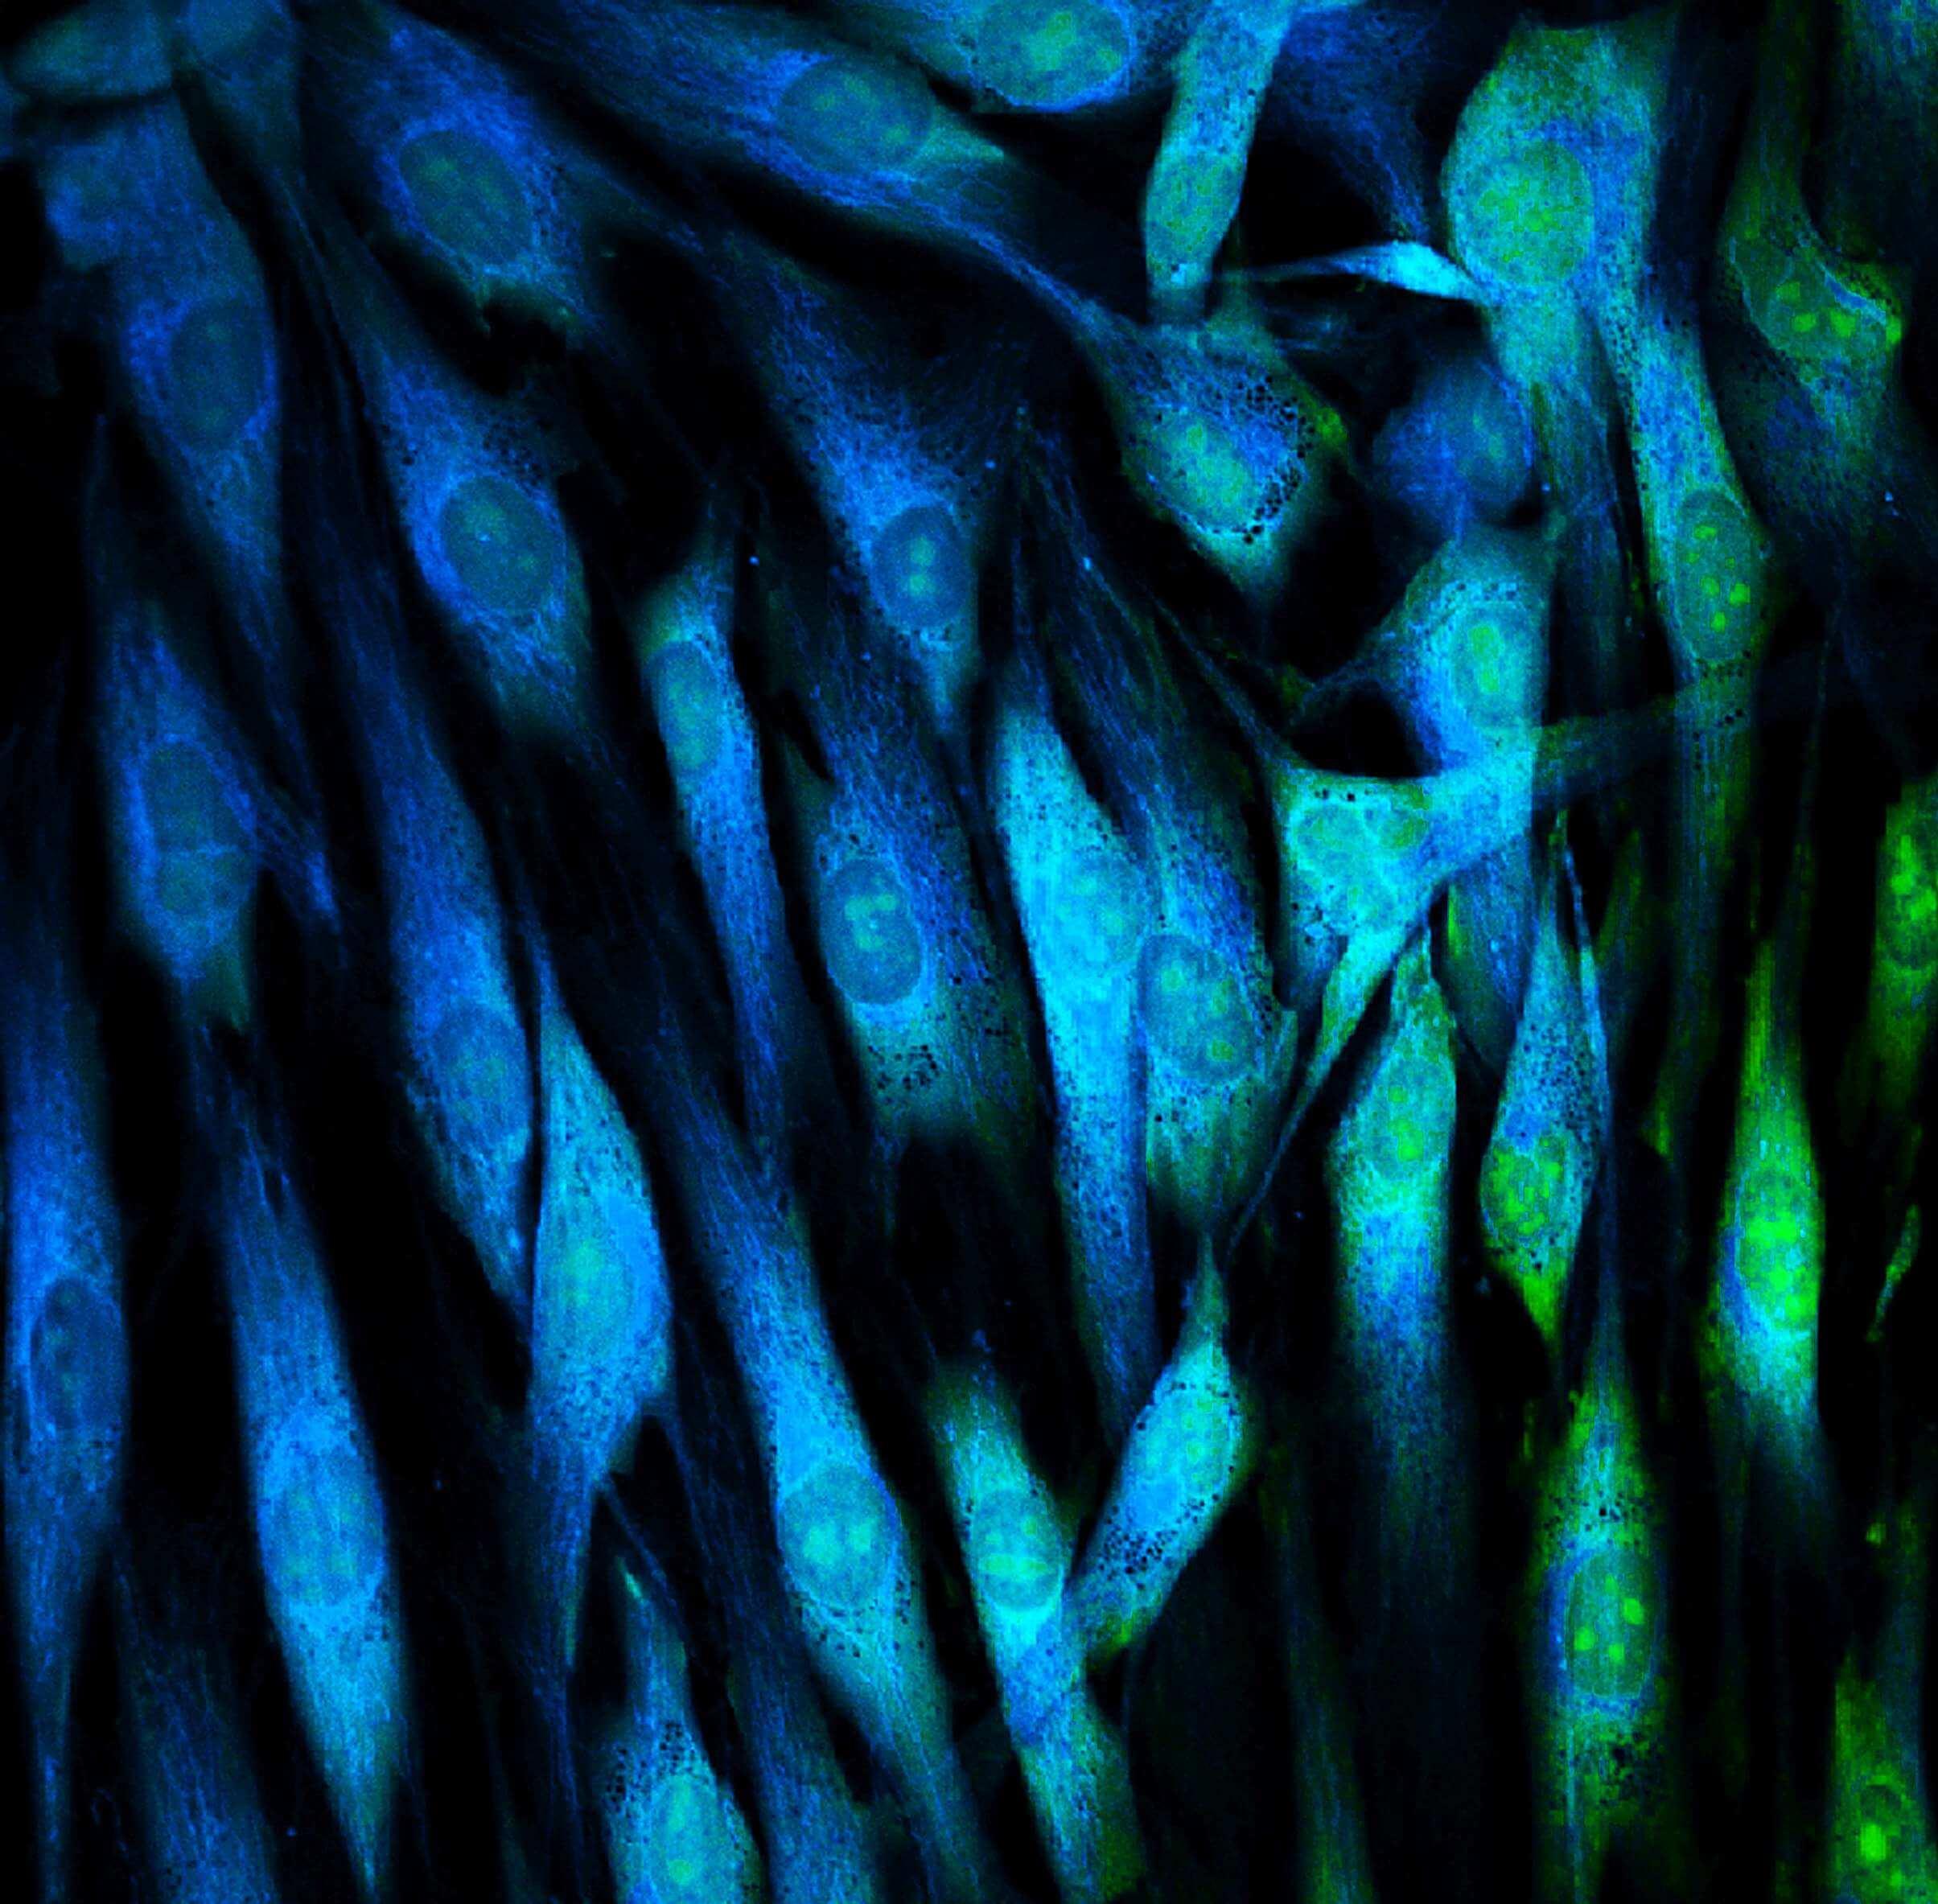 Mit fluoreszierenden Farbstoffen markierte Fibroblasten (Hautzellen).